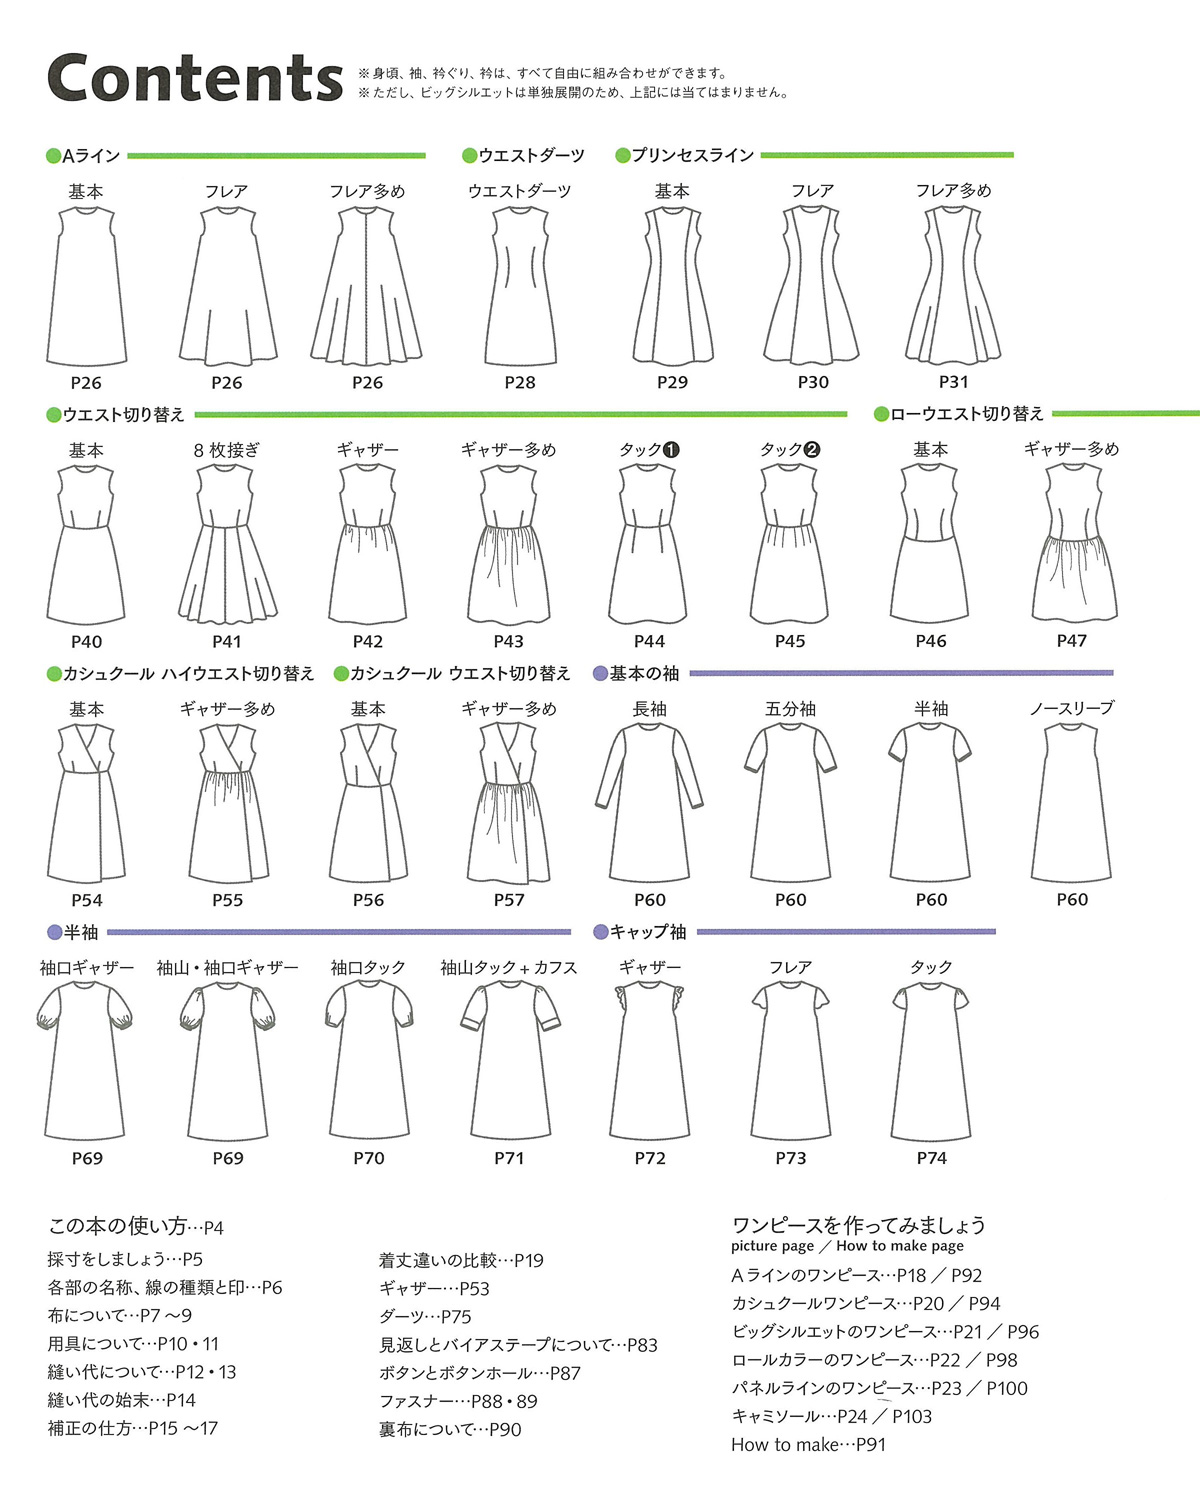 手づくりタウン By 日本ヴォーグ社 話題の ワンピースの基本パターン集 が本日2 19発売されました 好きなデザイン の身頃に袖や衿を組み合わせて Okini ワンピをカスタムできます なんと実物大型紙 7 15号サイズ つき きゃっ 狂喜乱舞で気絶